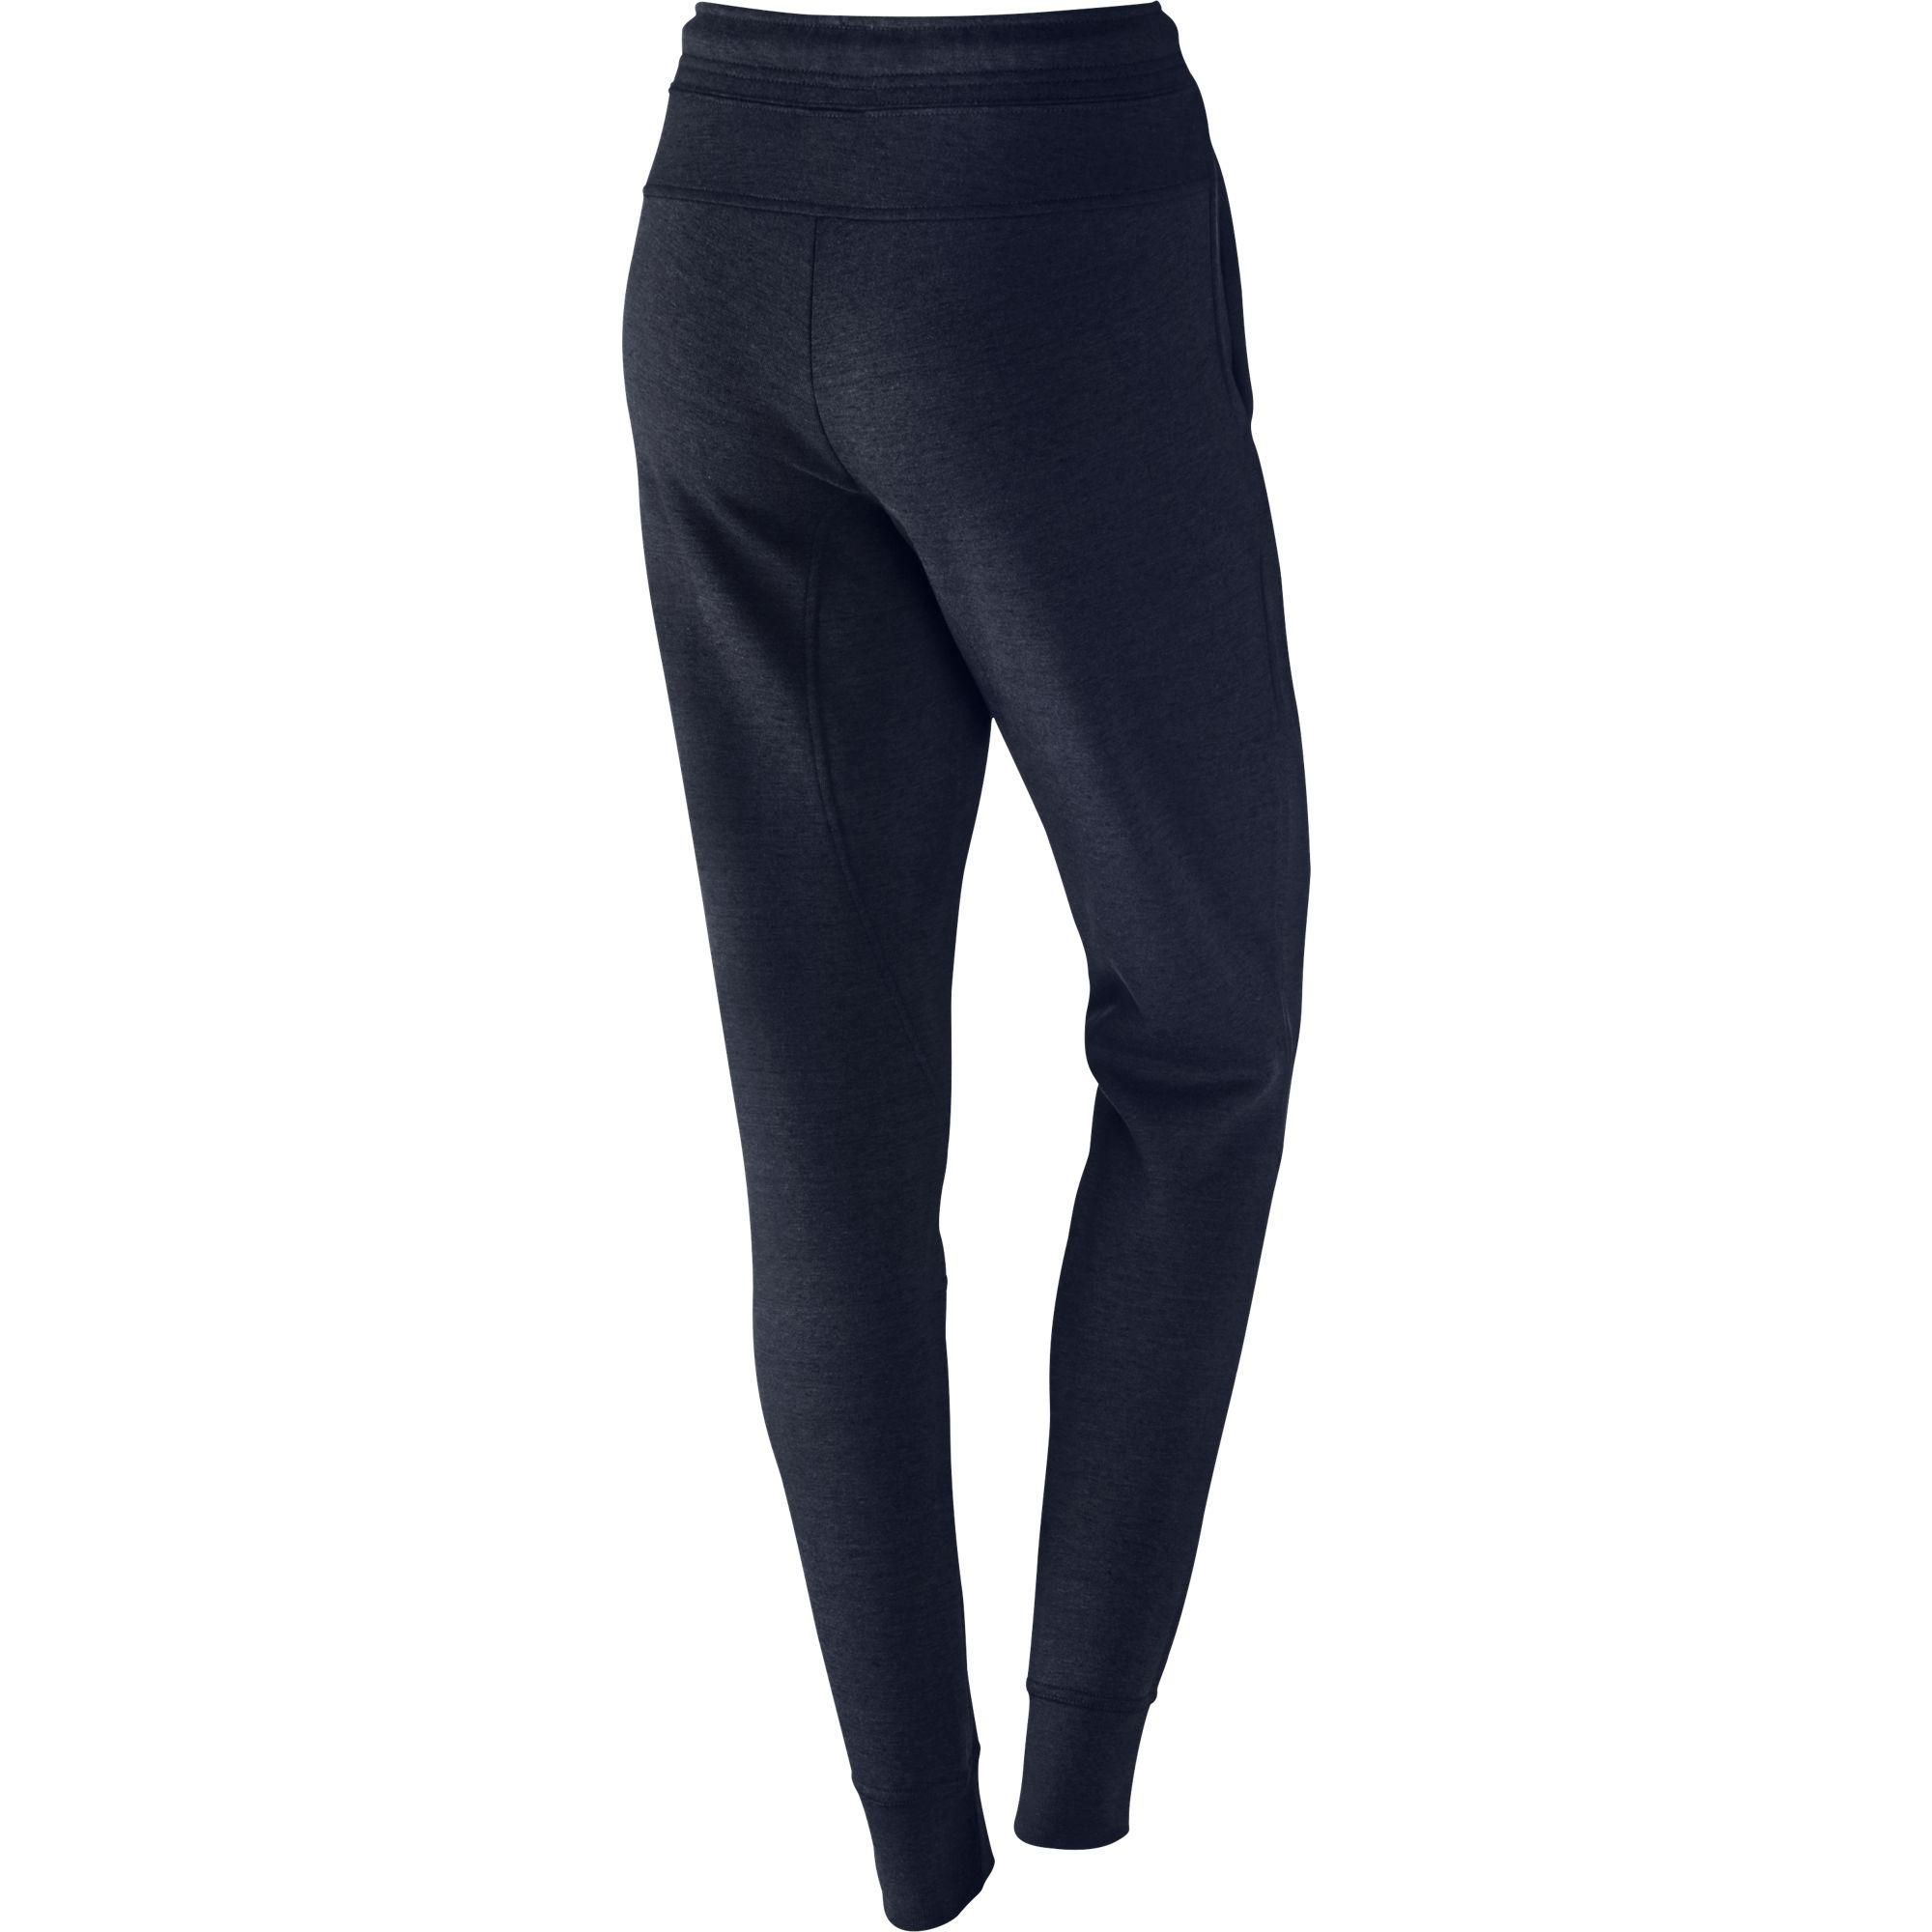 Nike Womens Tech Fleece Pants - Obsidian Heather/Obsidian/Black ...